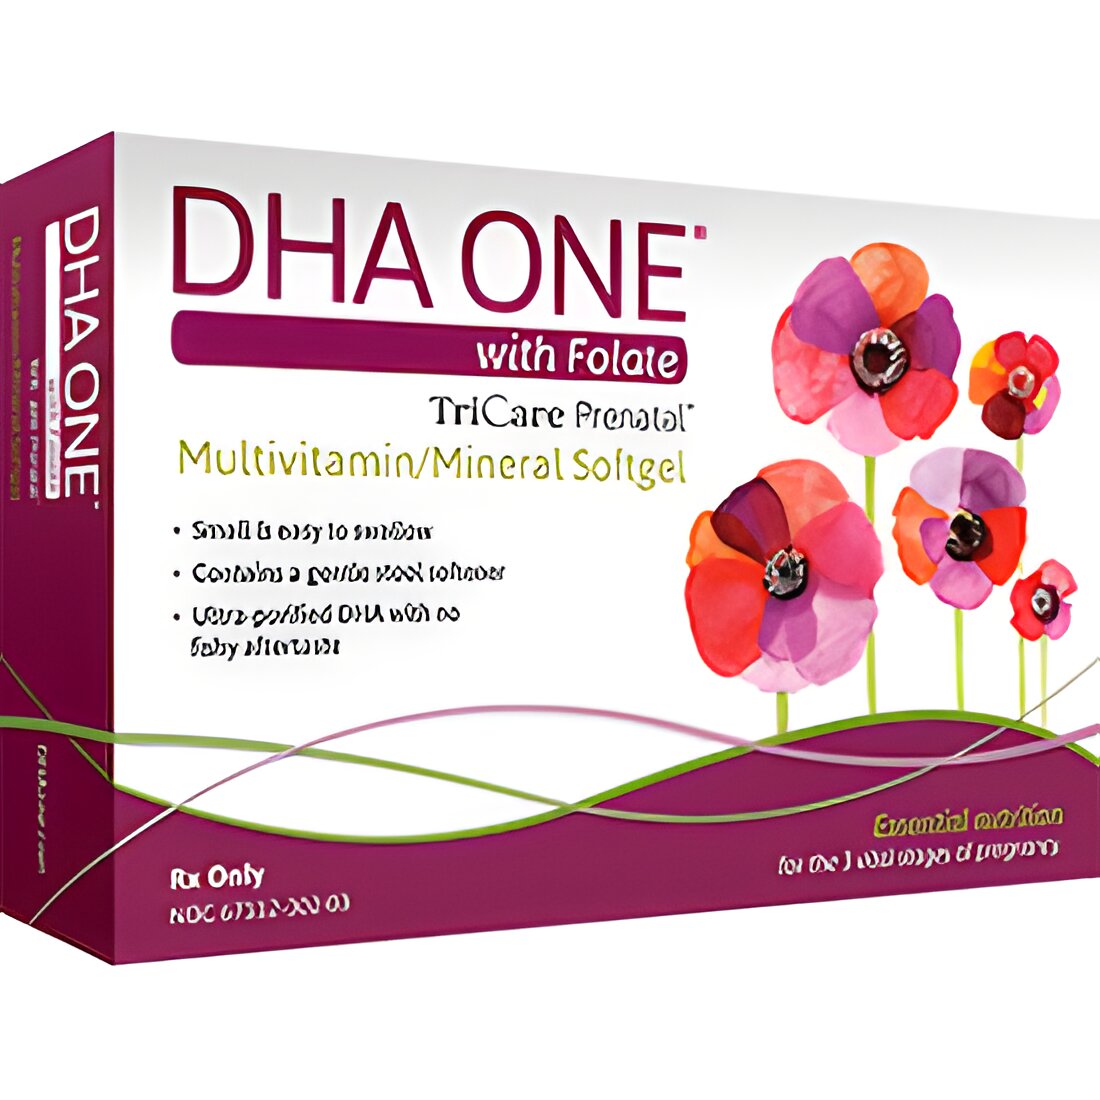 Free DHA ONE Prenatal Vitamin Samples